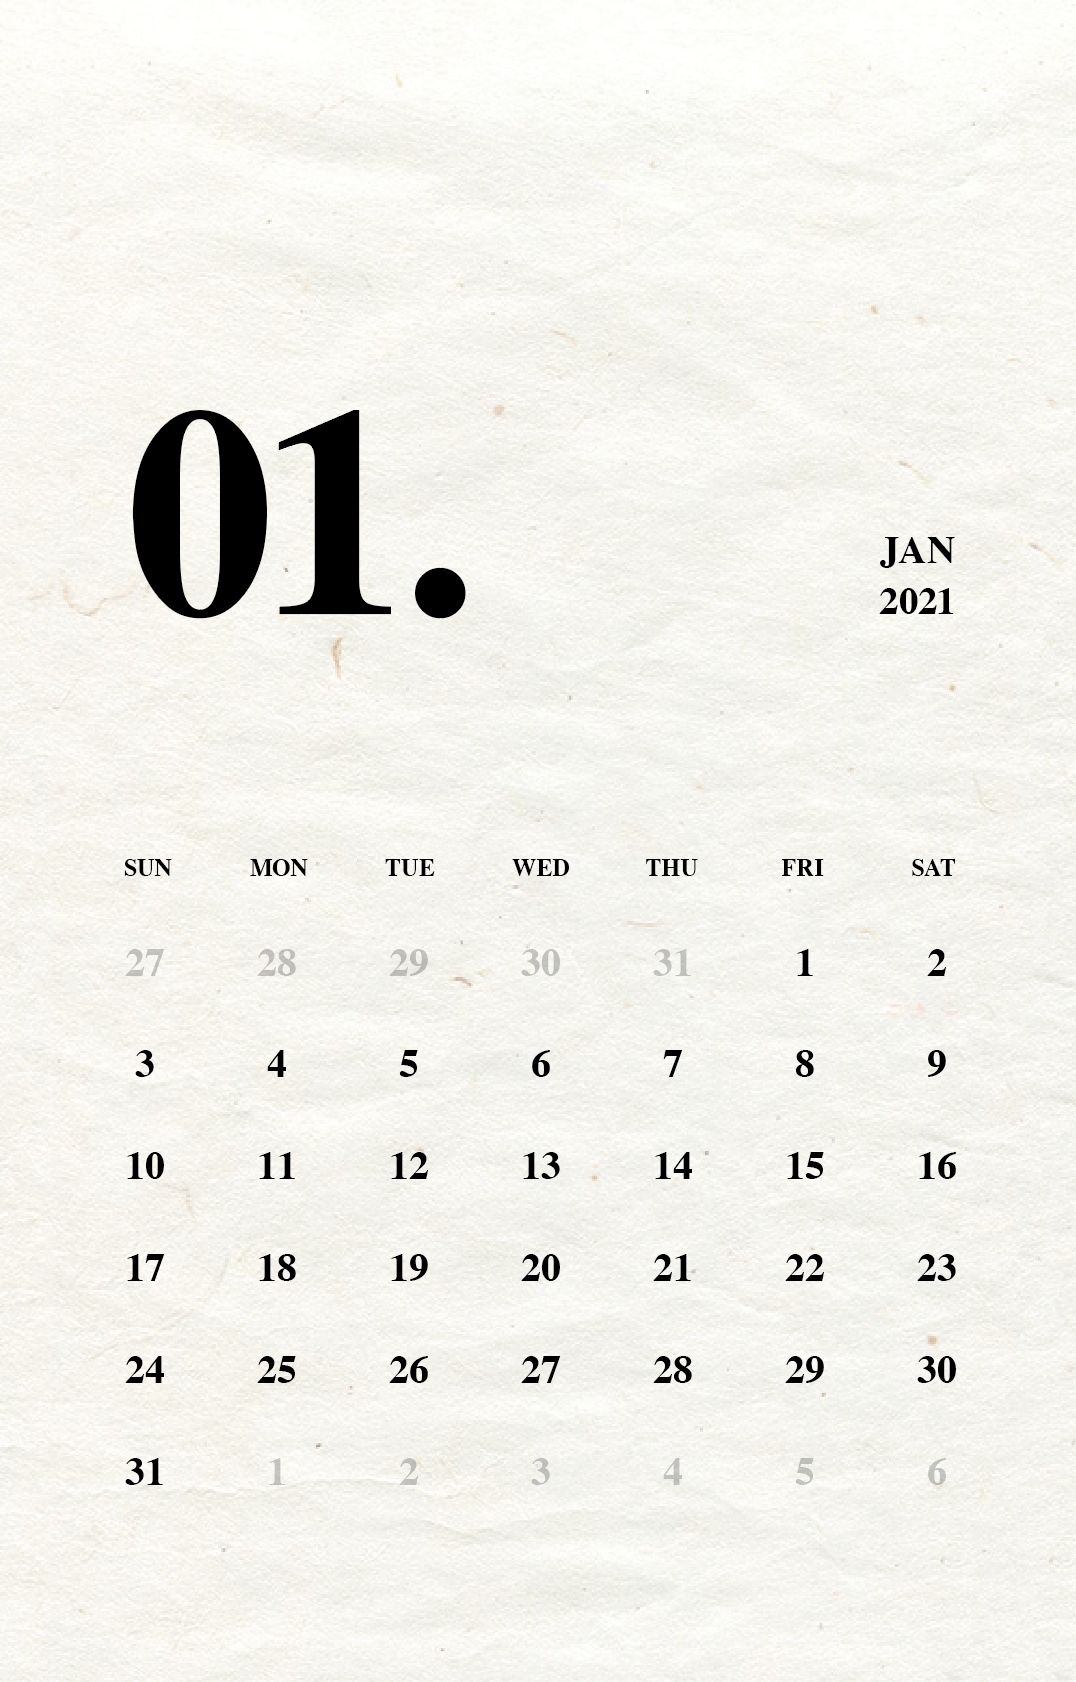 シンプルなカレンダー(『Times』フォント版)